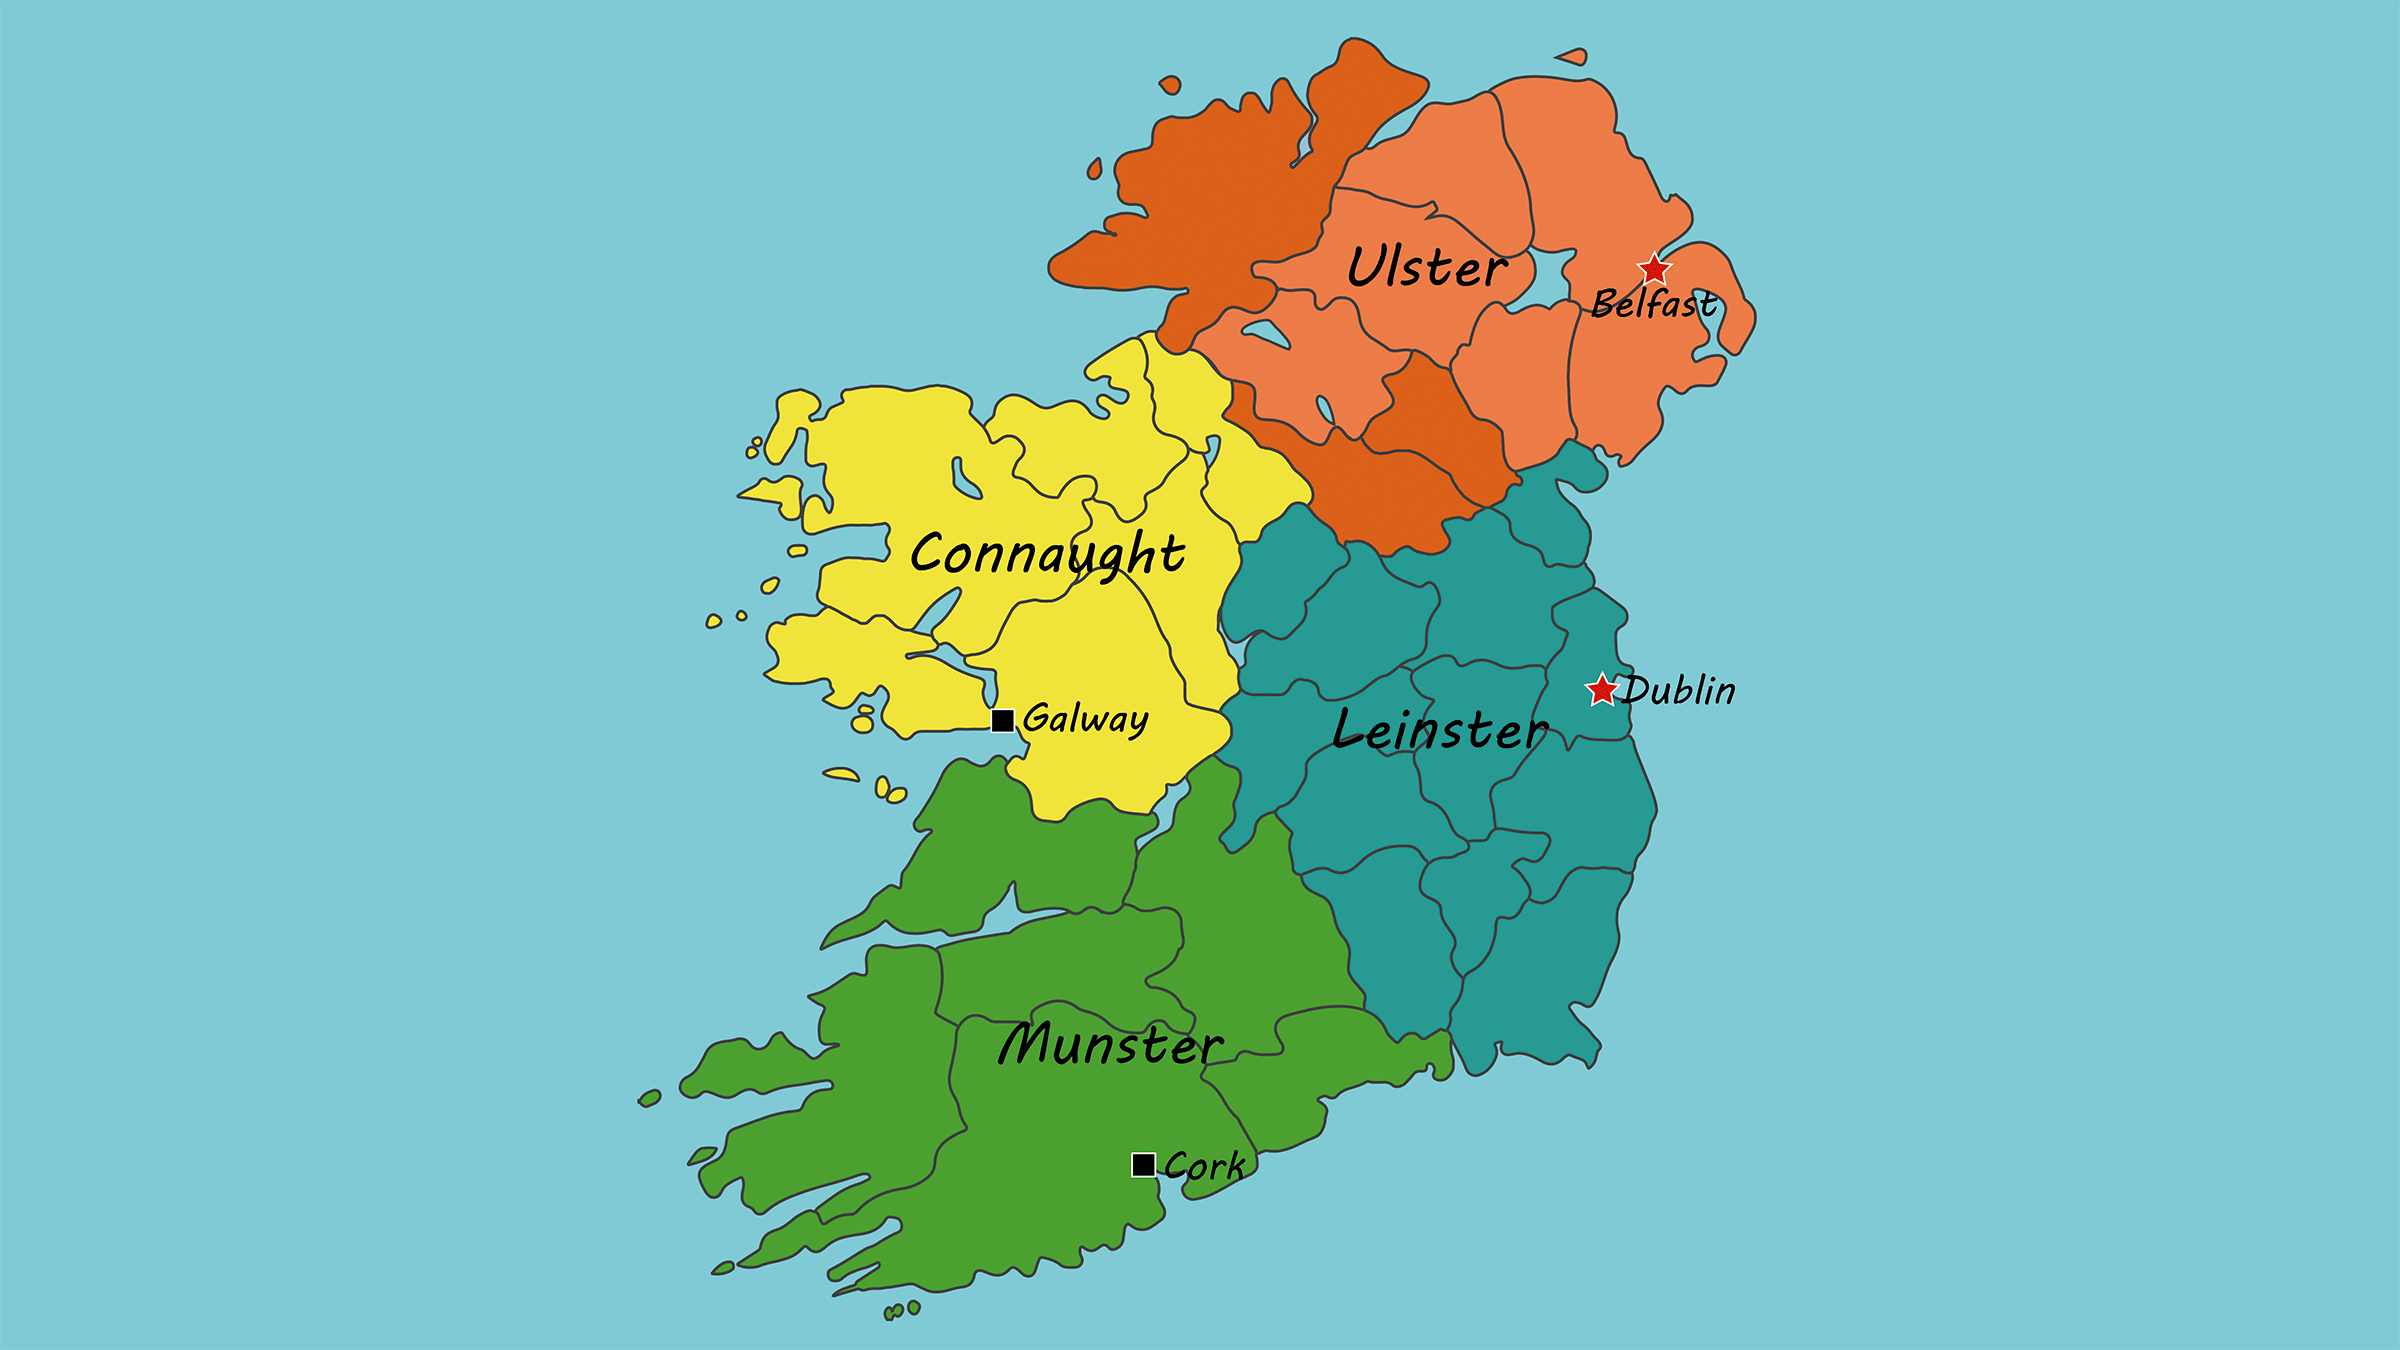 la-divisi-n-de-irlanda-en-provincias